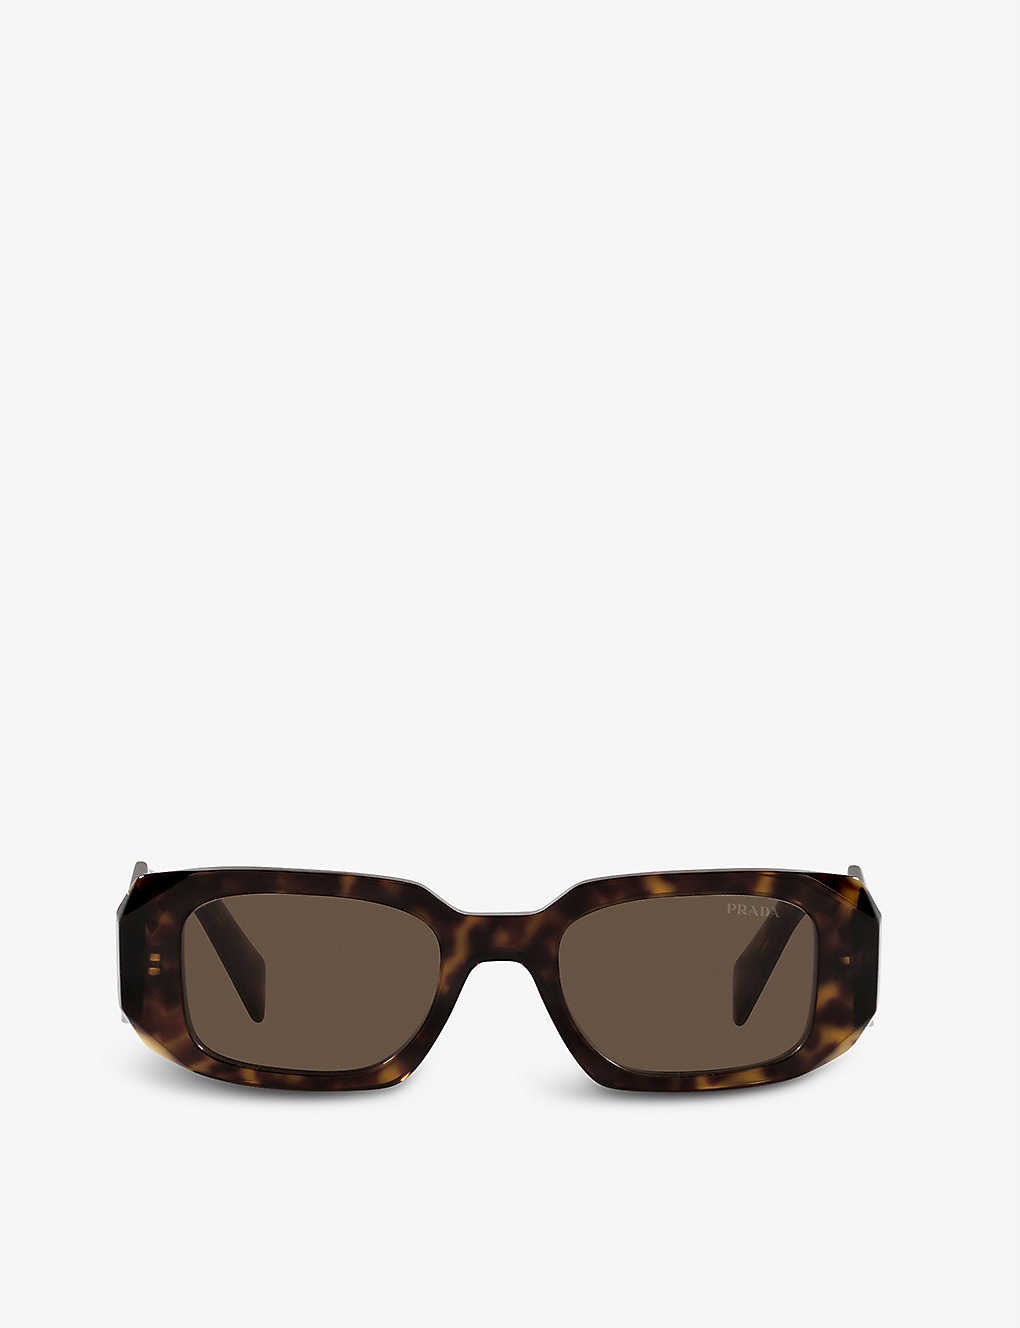 PR 17WS rectangular-frame tortoiseshell sunglasses - 1